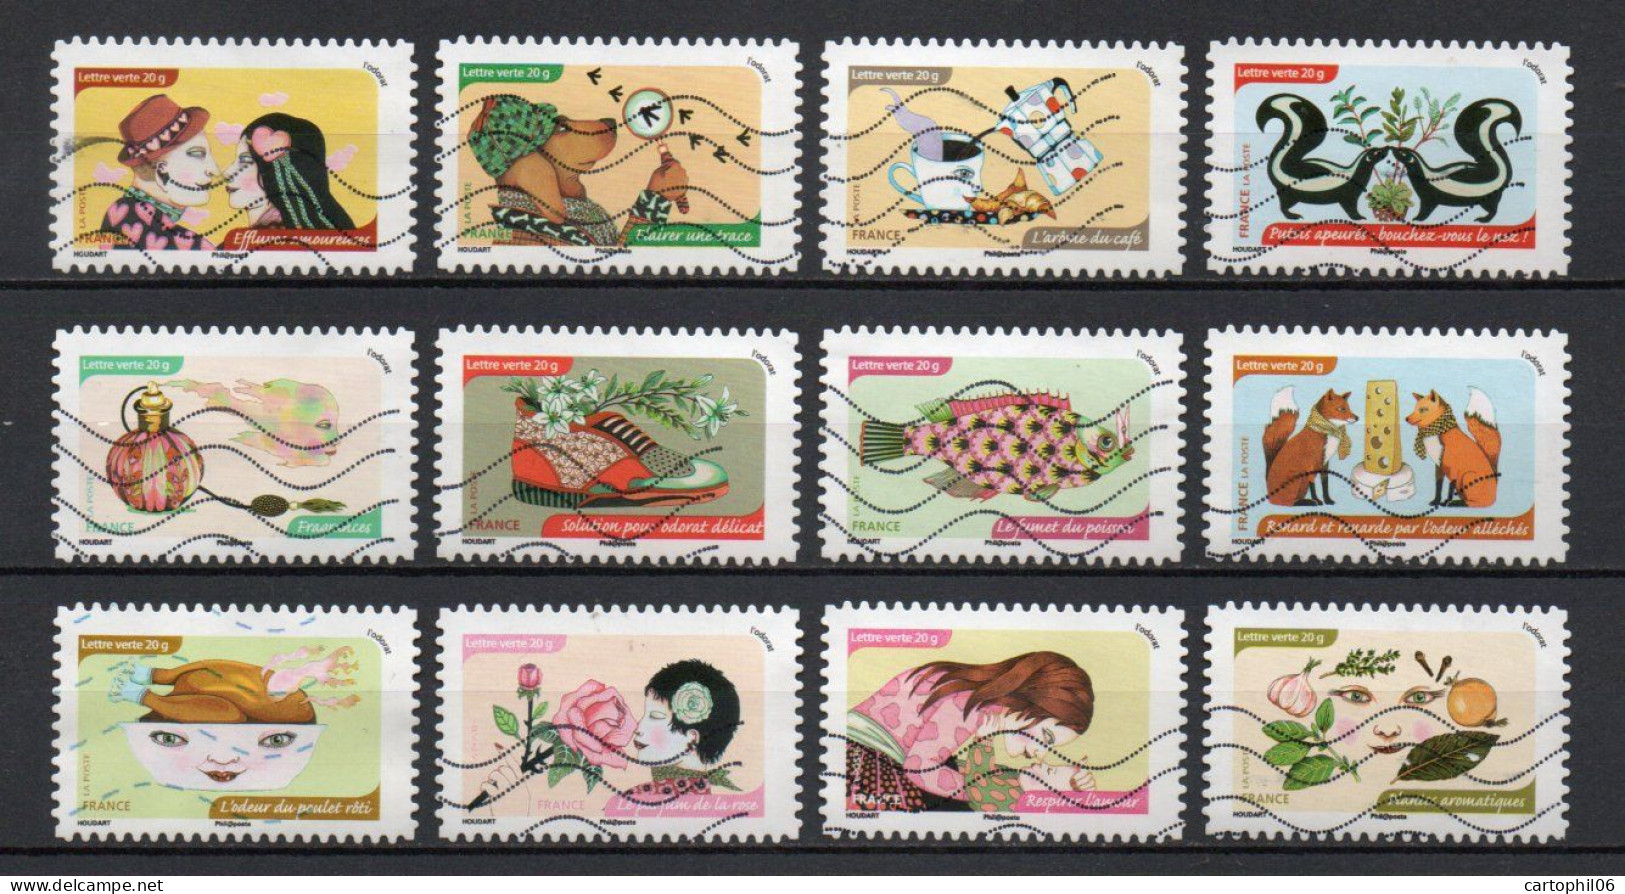 - FRANCE Adhésifs N° 1033/44 Oblitérés - Série Complète L'ODORAT 2014 (12 Timbres) - - Used Stamps